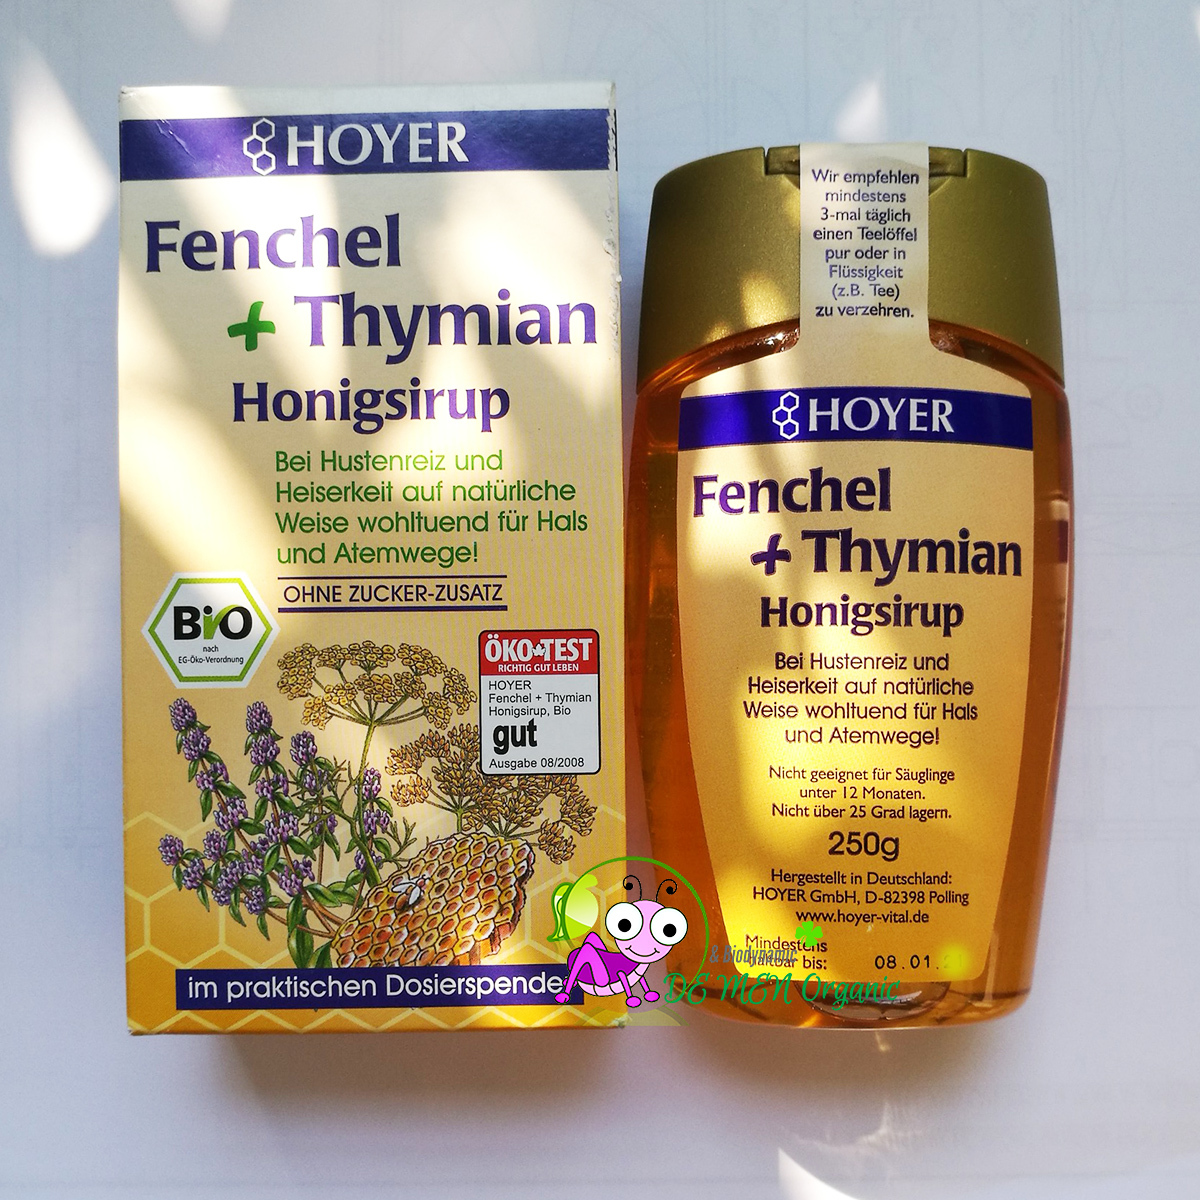 Si-rô mật ong trị ho Hoyer Fenchel hữu cơ (250g)